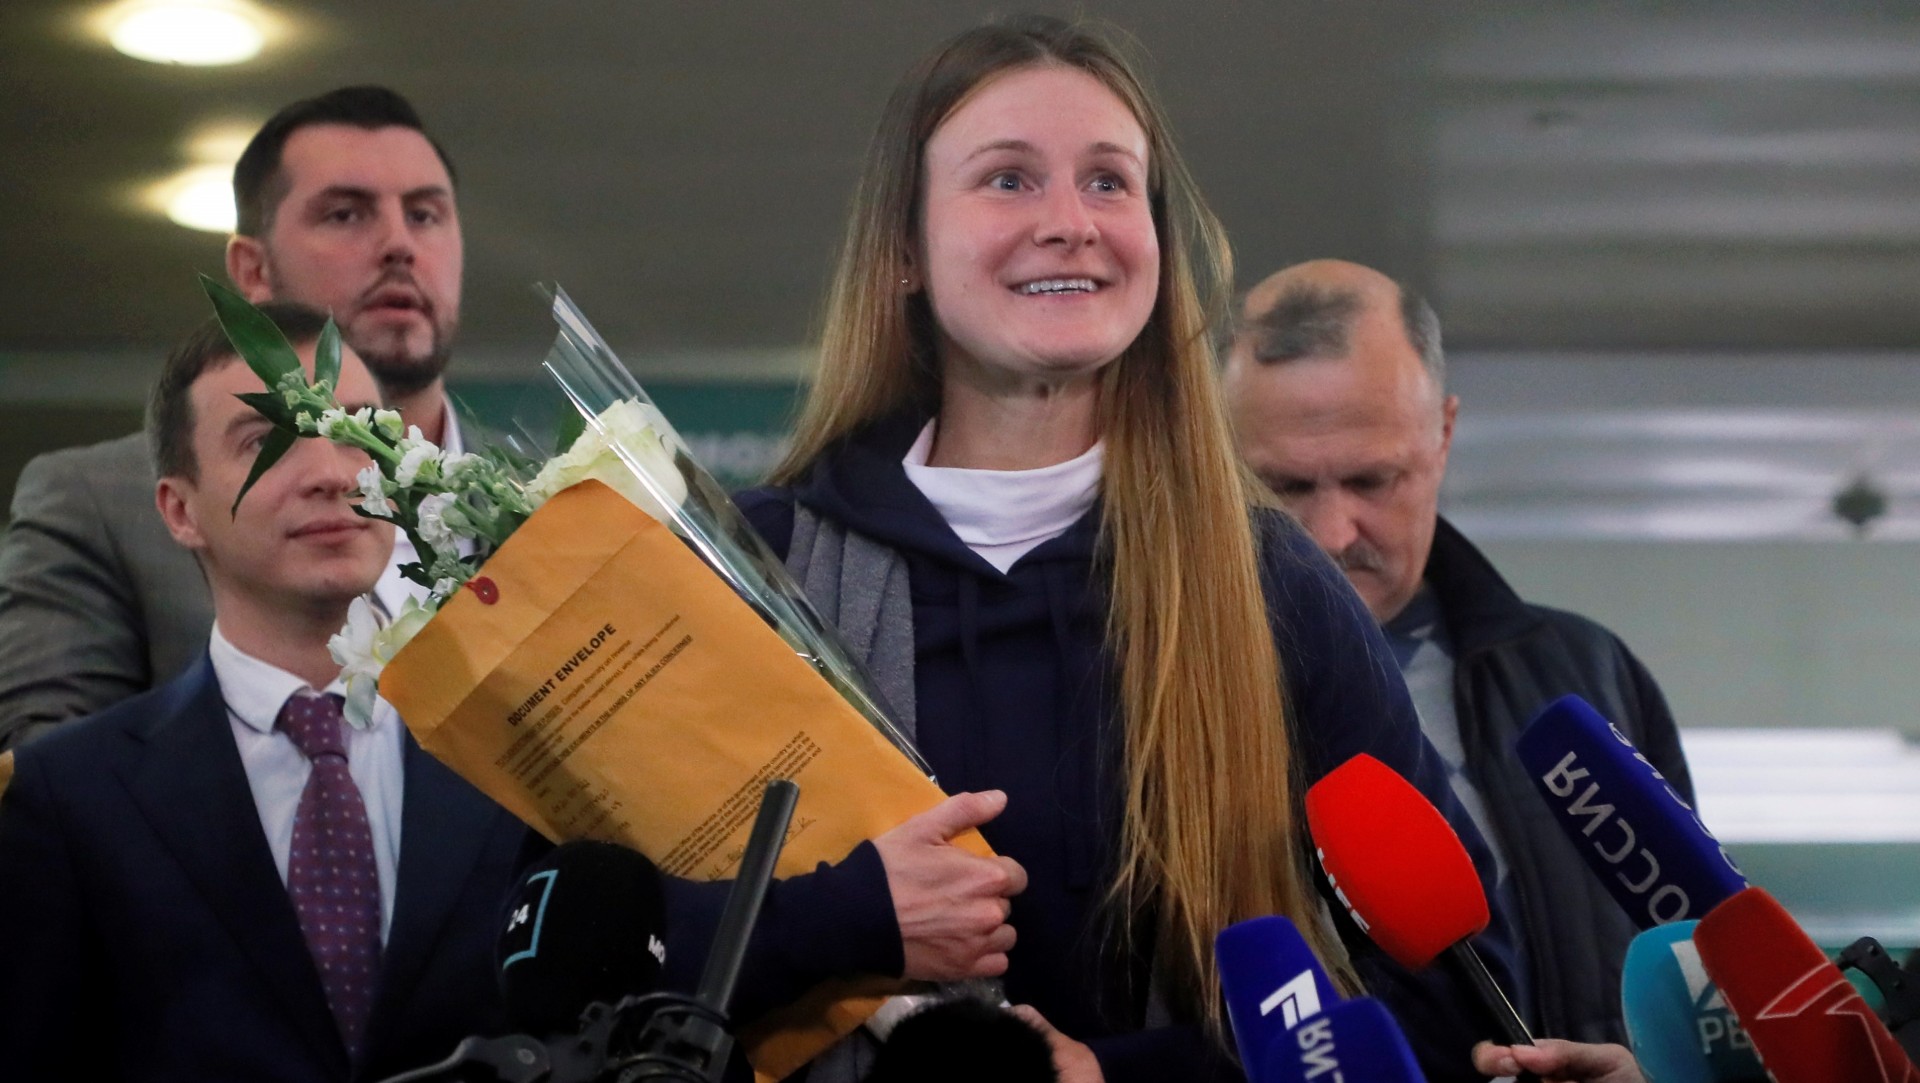 María Bútina, la presunta espía rusa deportada de EU, llega a Moscú